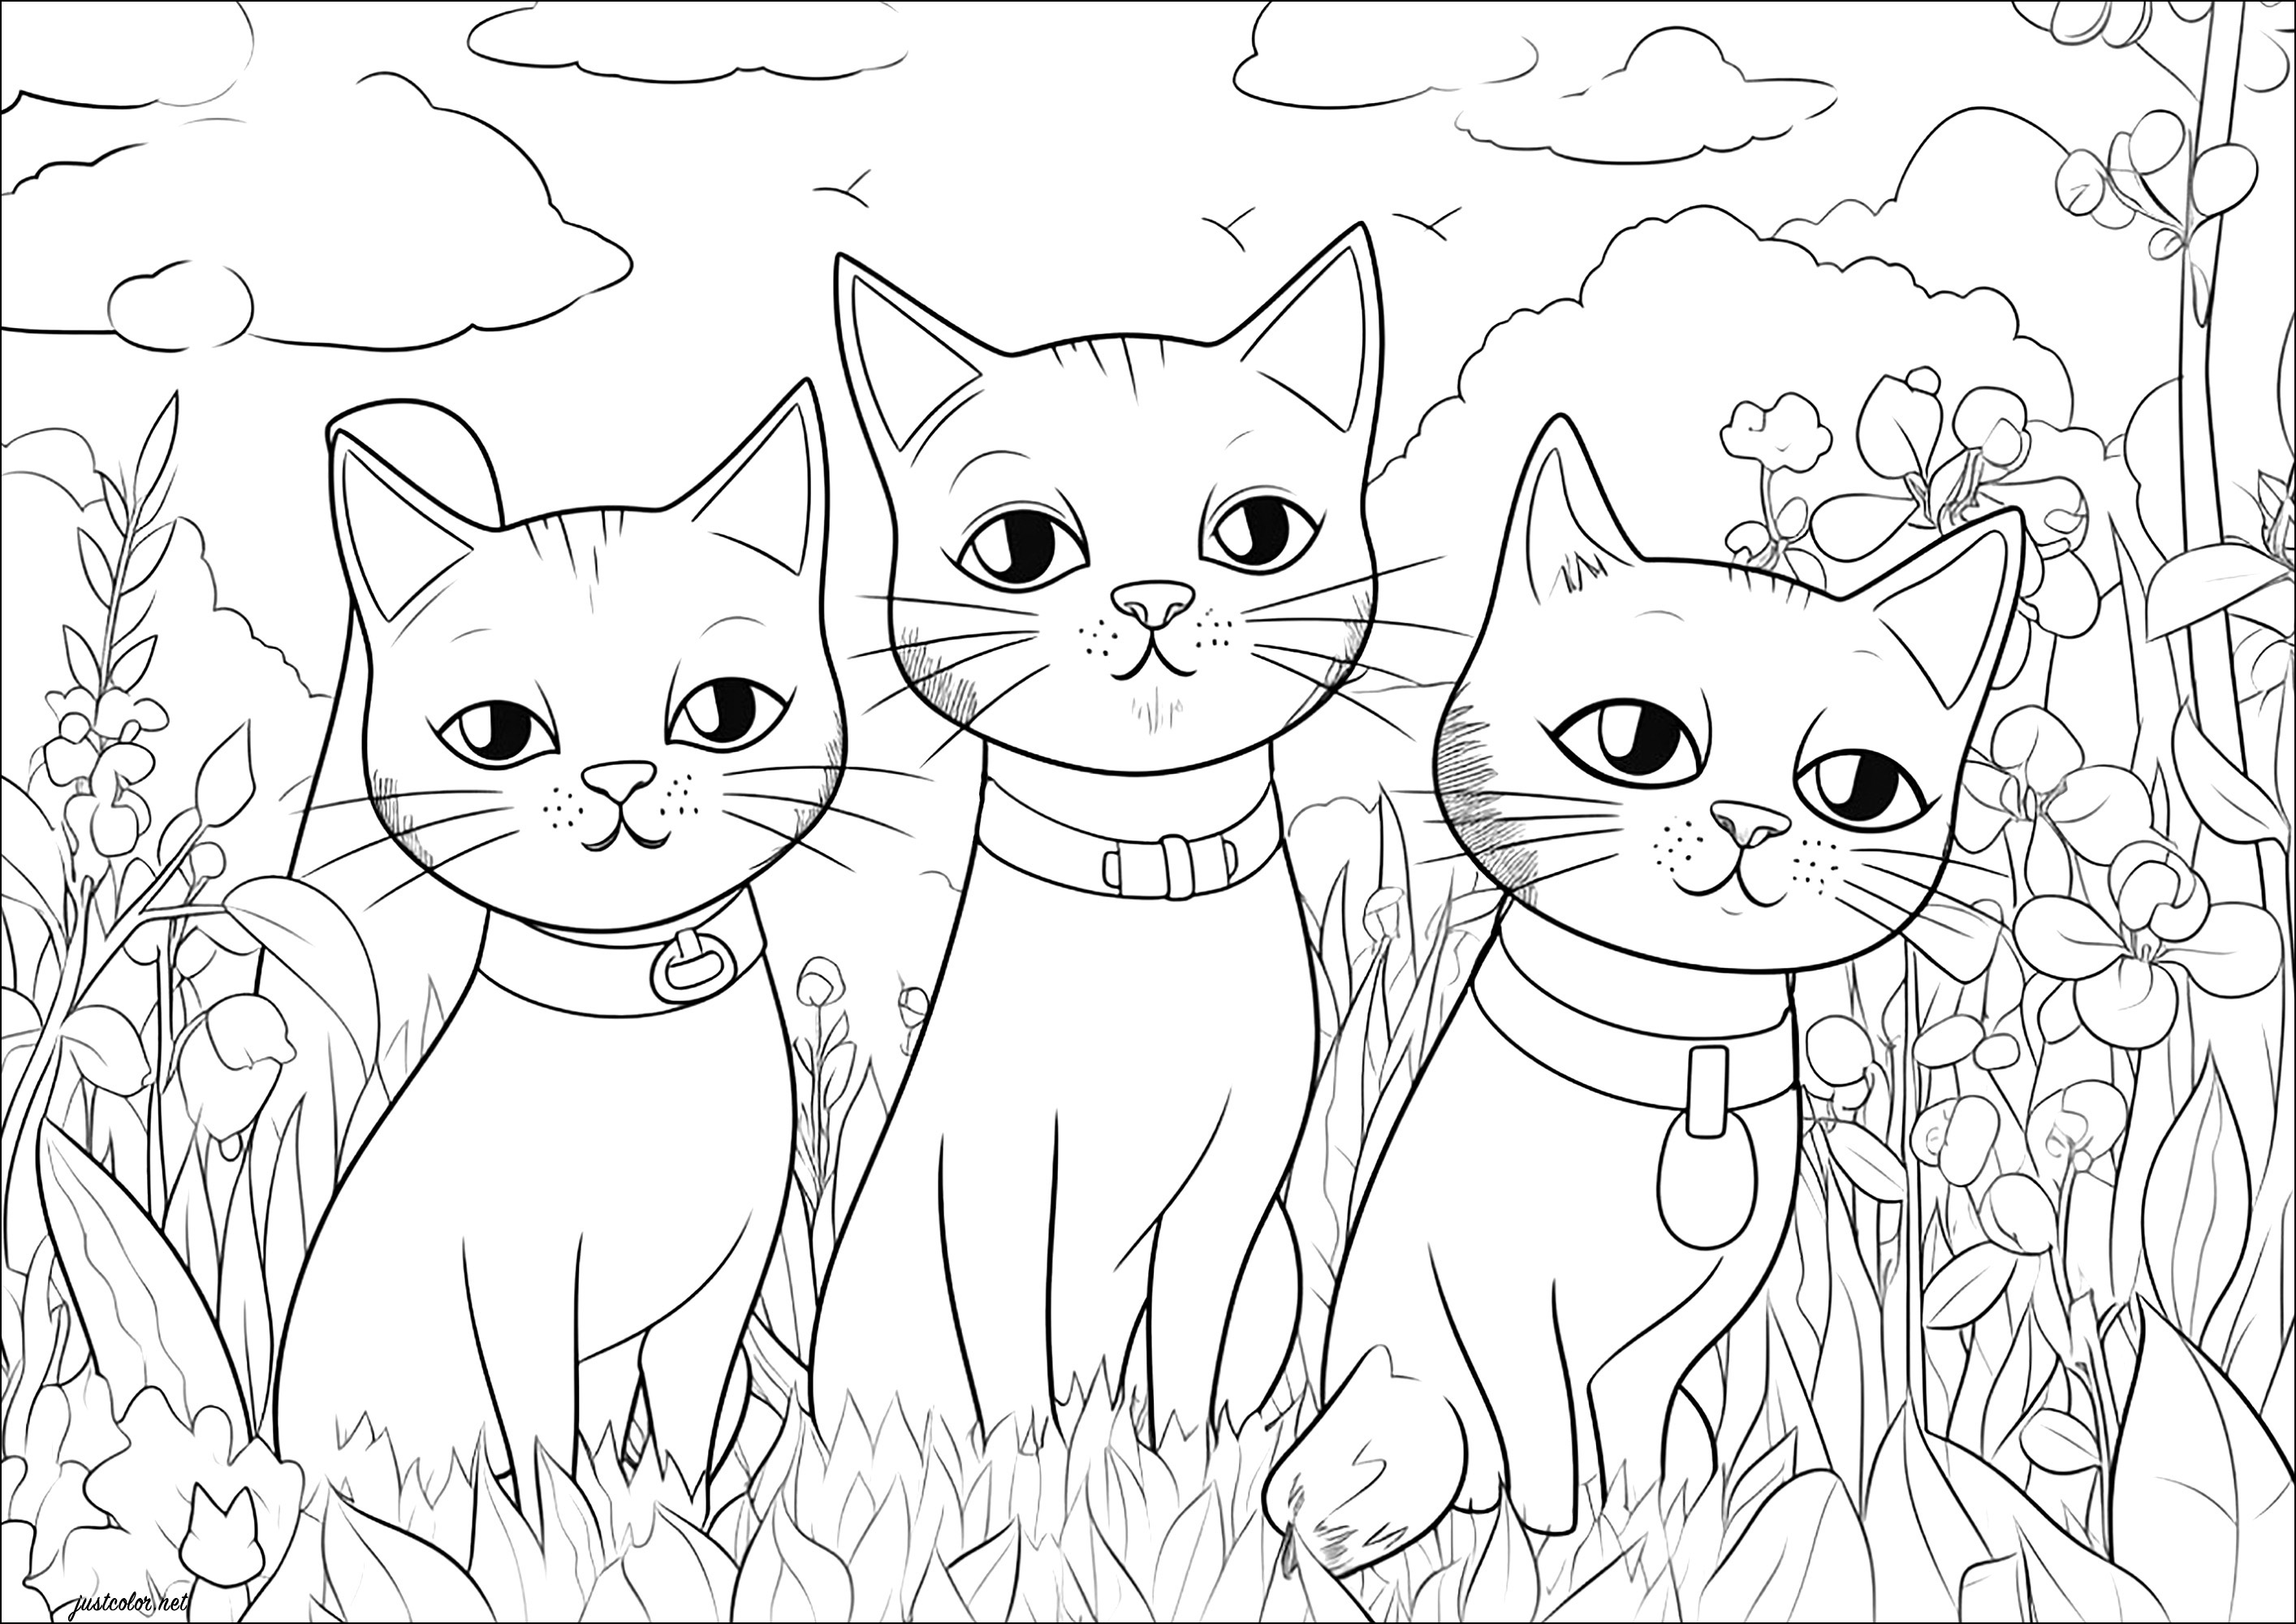 Três gatos a olhar para si. Três gatos bonitos com um olhar desdenhoso e muitas plantas para colorir no fundo.